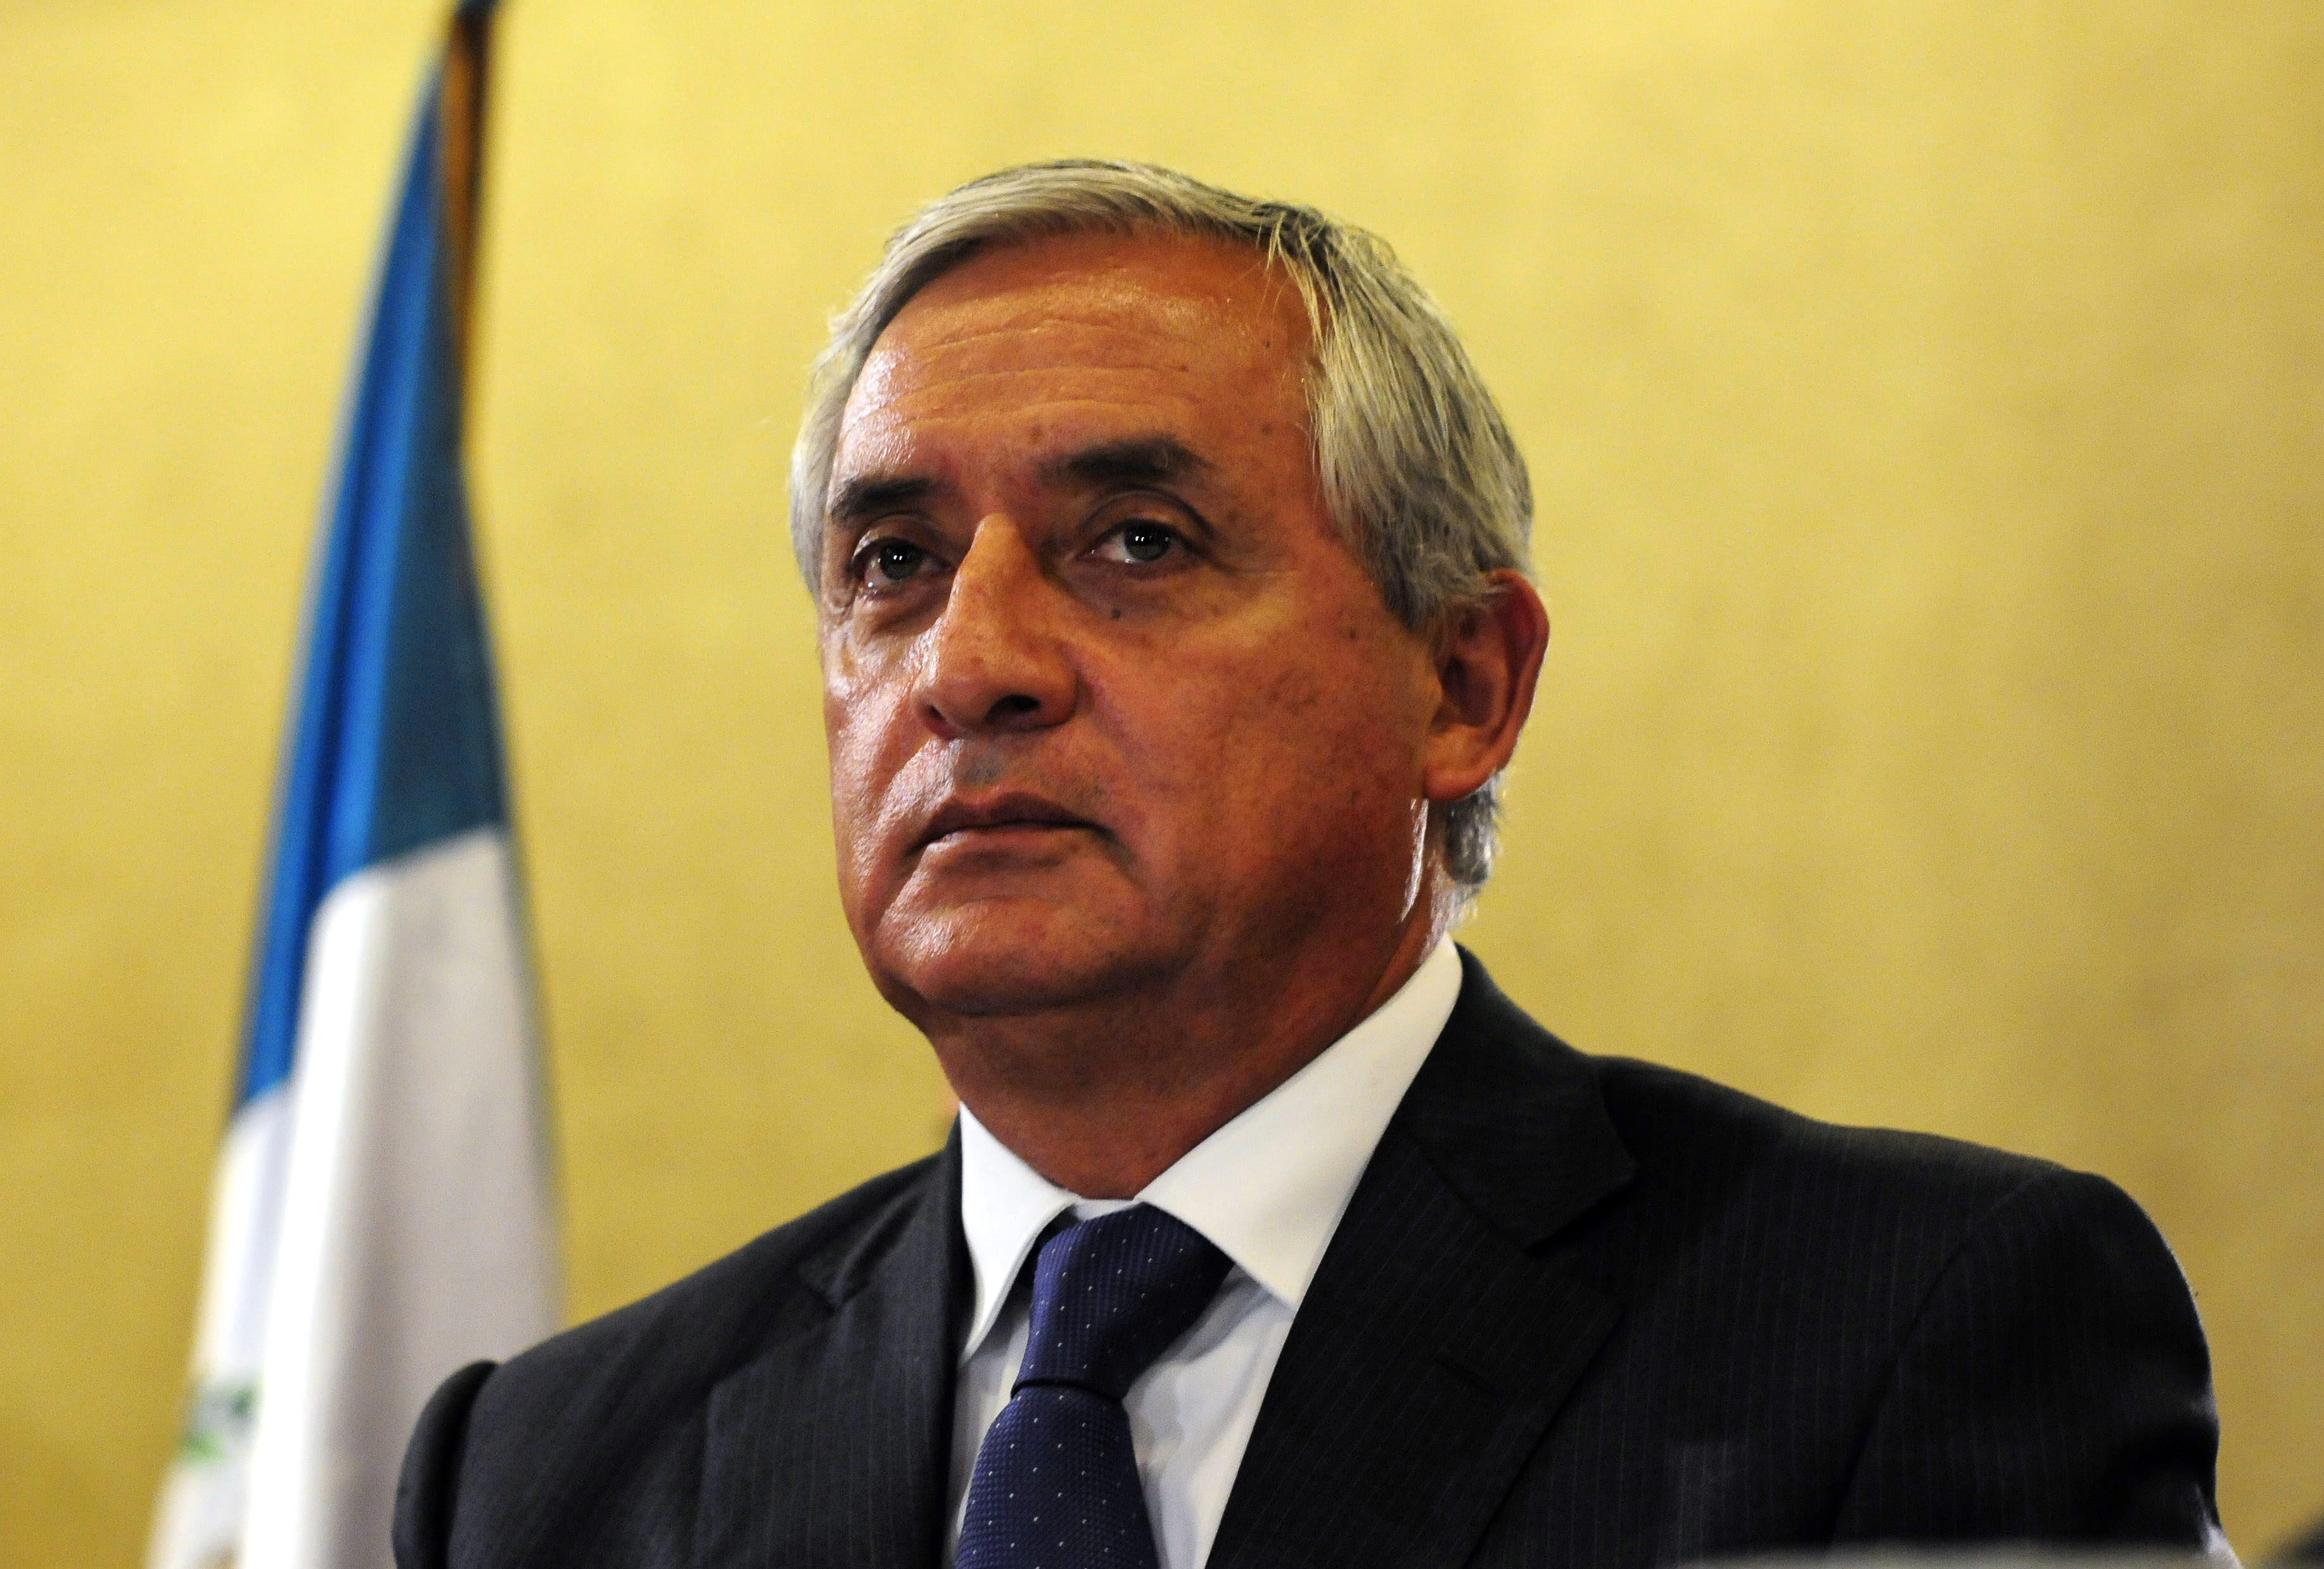 El ex presidente guatemalteco indicó que las críticas por parte de los ciudadanos de su país han sido muy duras.